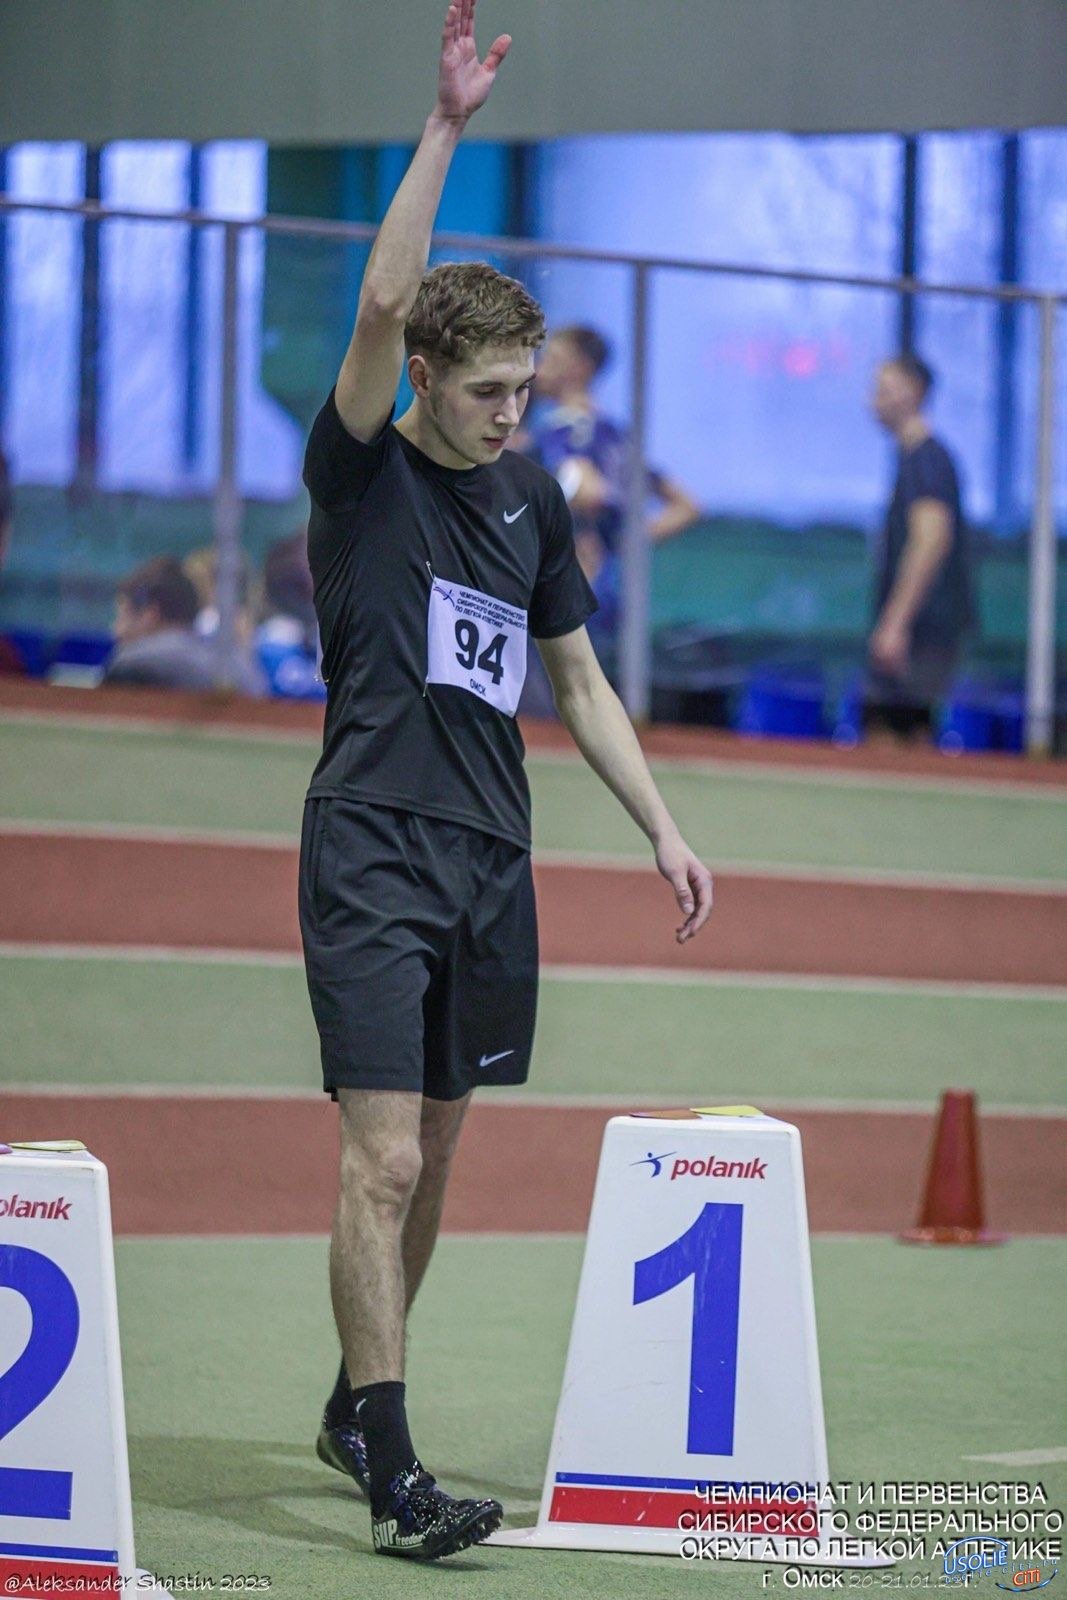 Усольчанин Александр Прошев стал чемпионом по легкой атлетике